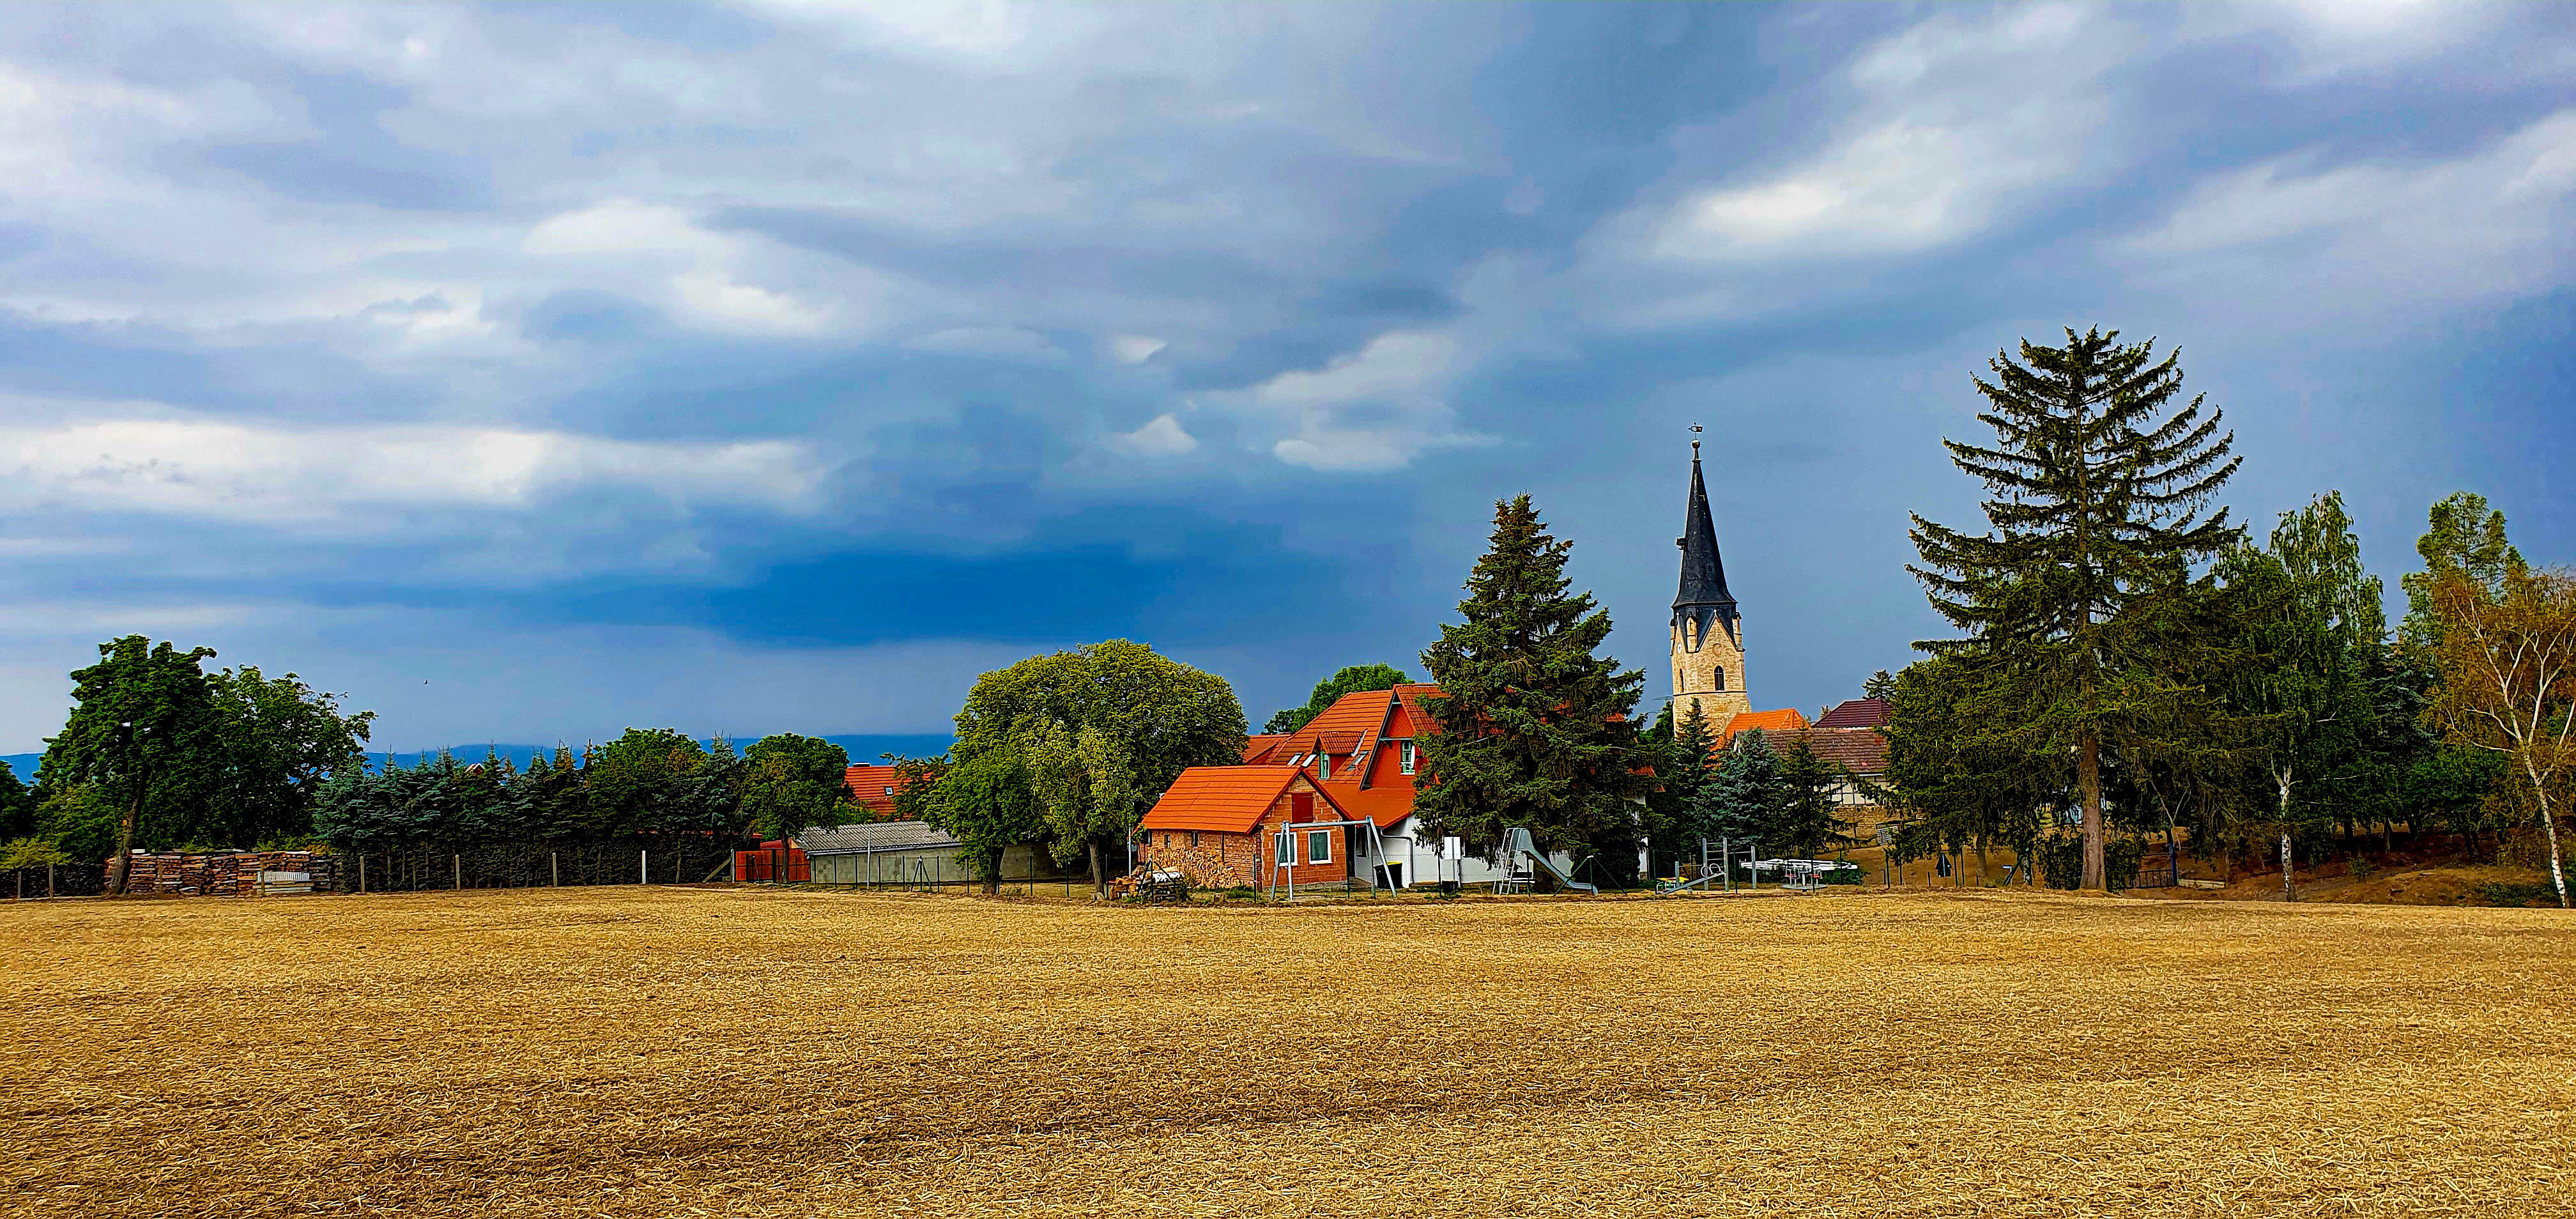 oud (boeren) dorp met altijd een kerktoren